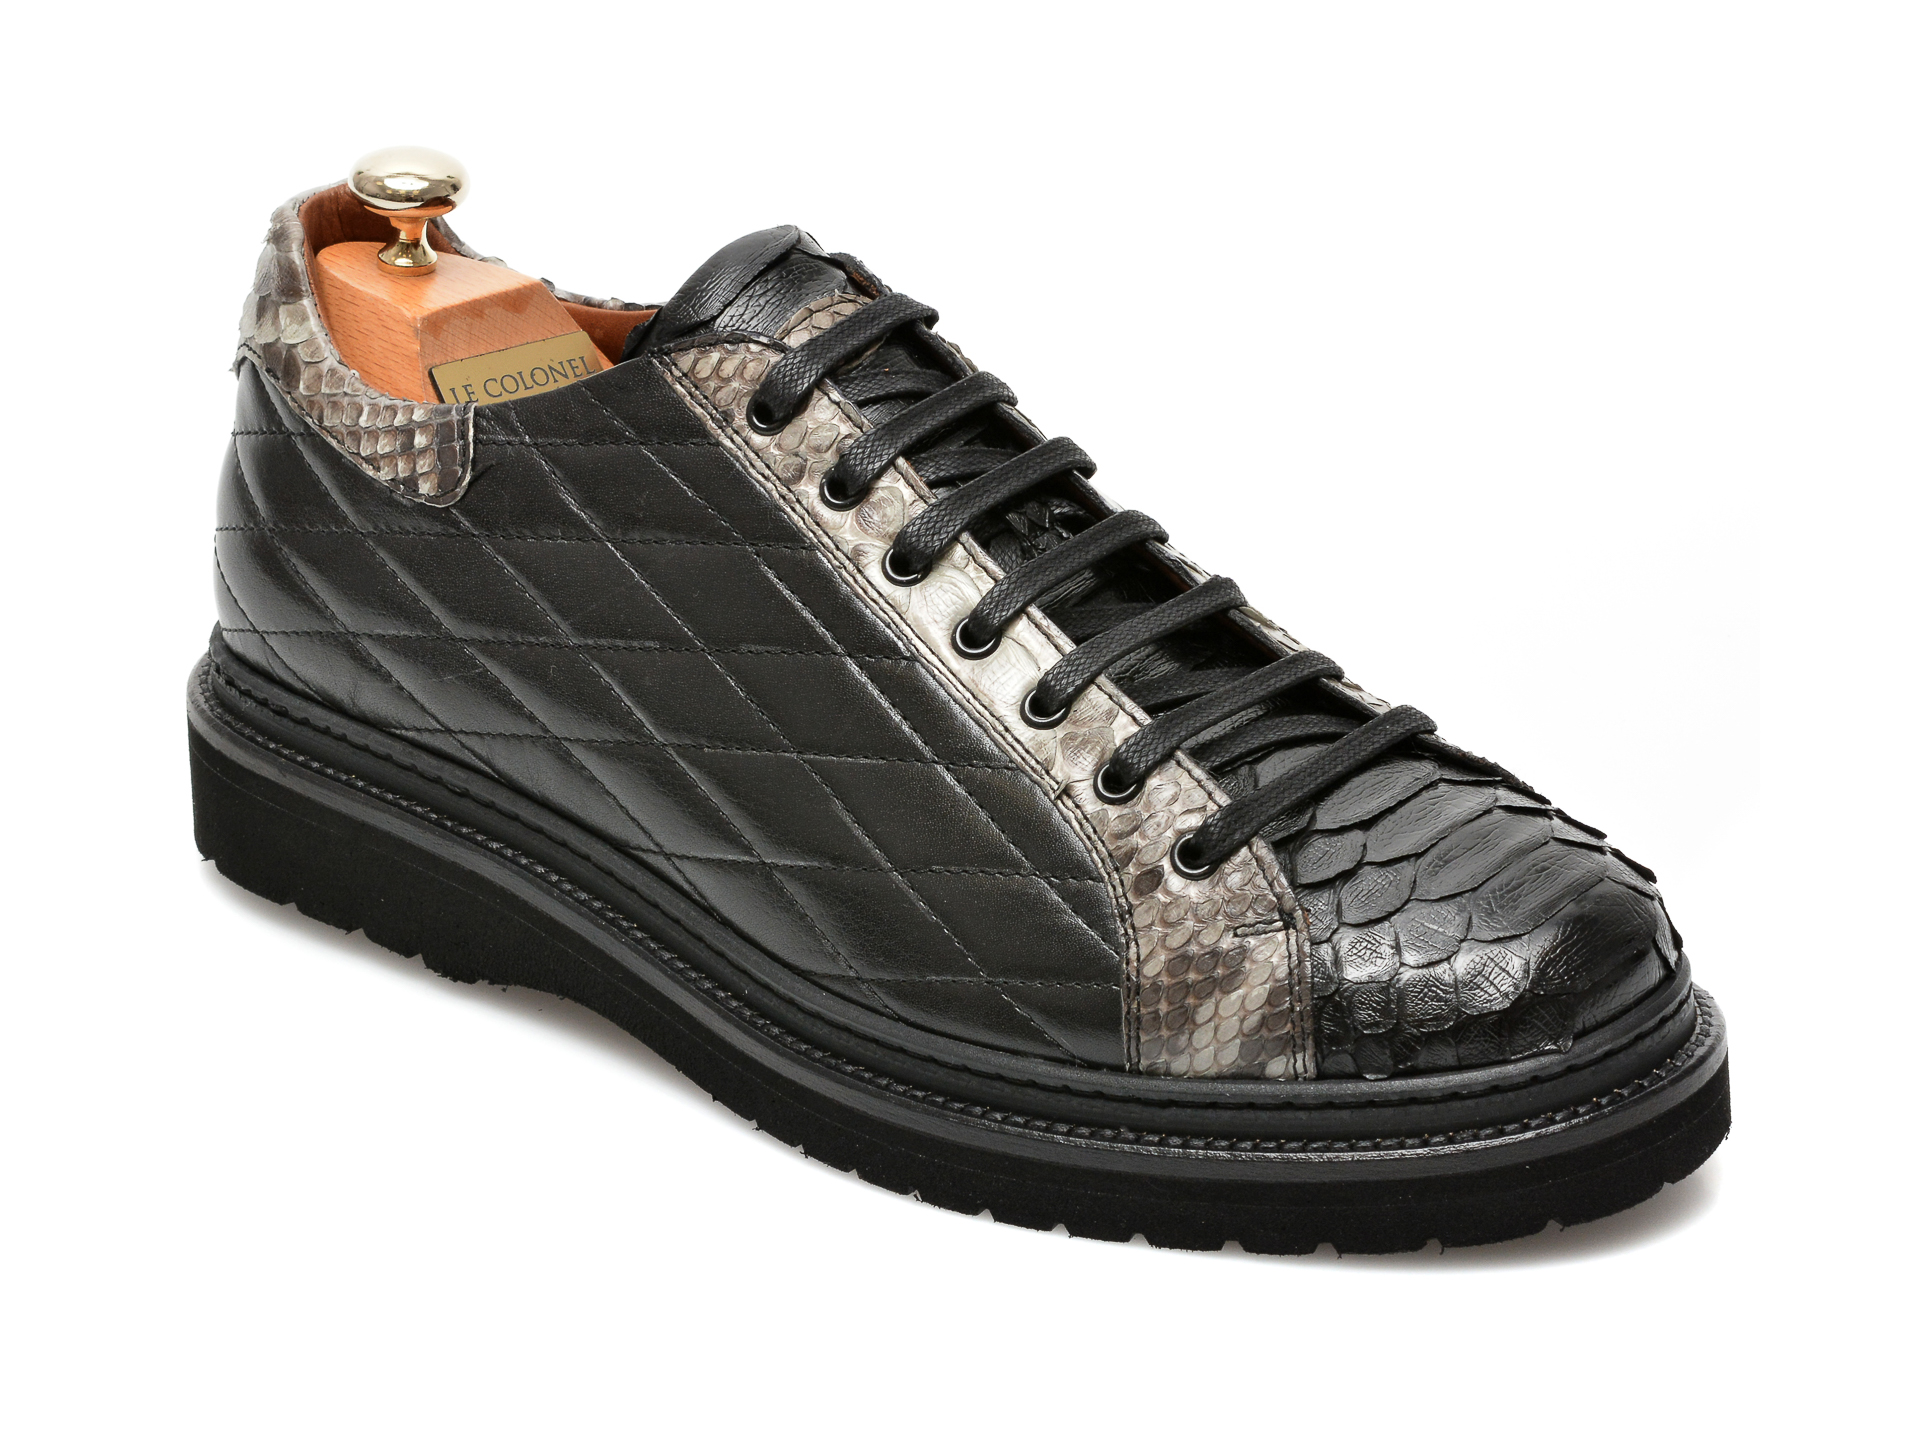 Pantofi LE COLONEL negri, 64802, din piele naturala Le Colonel